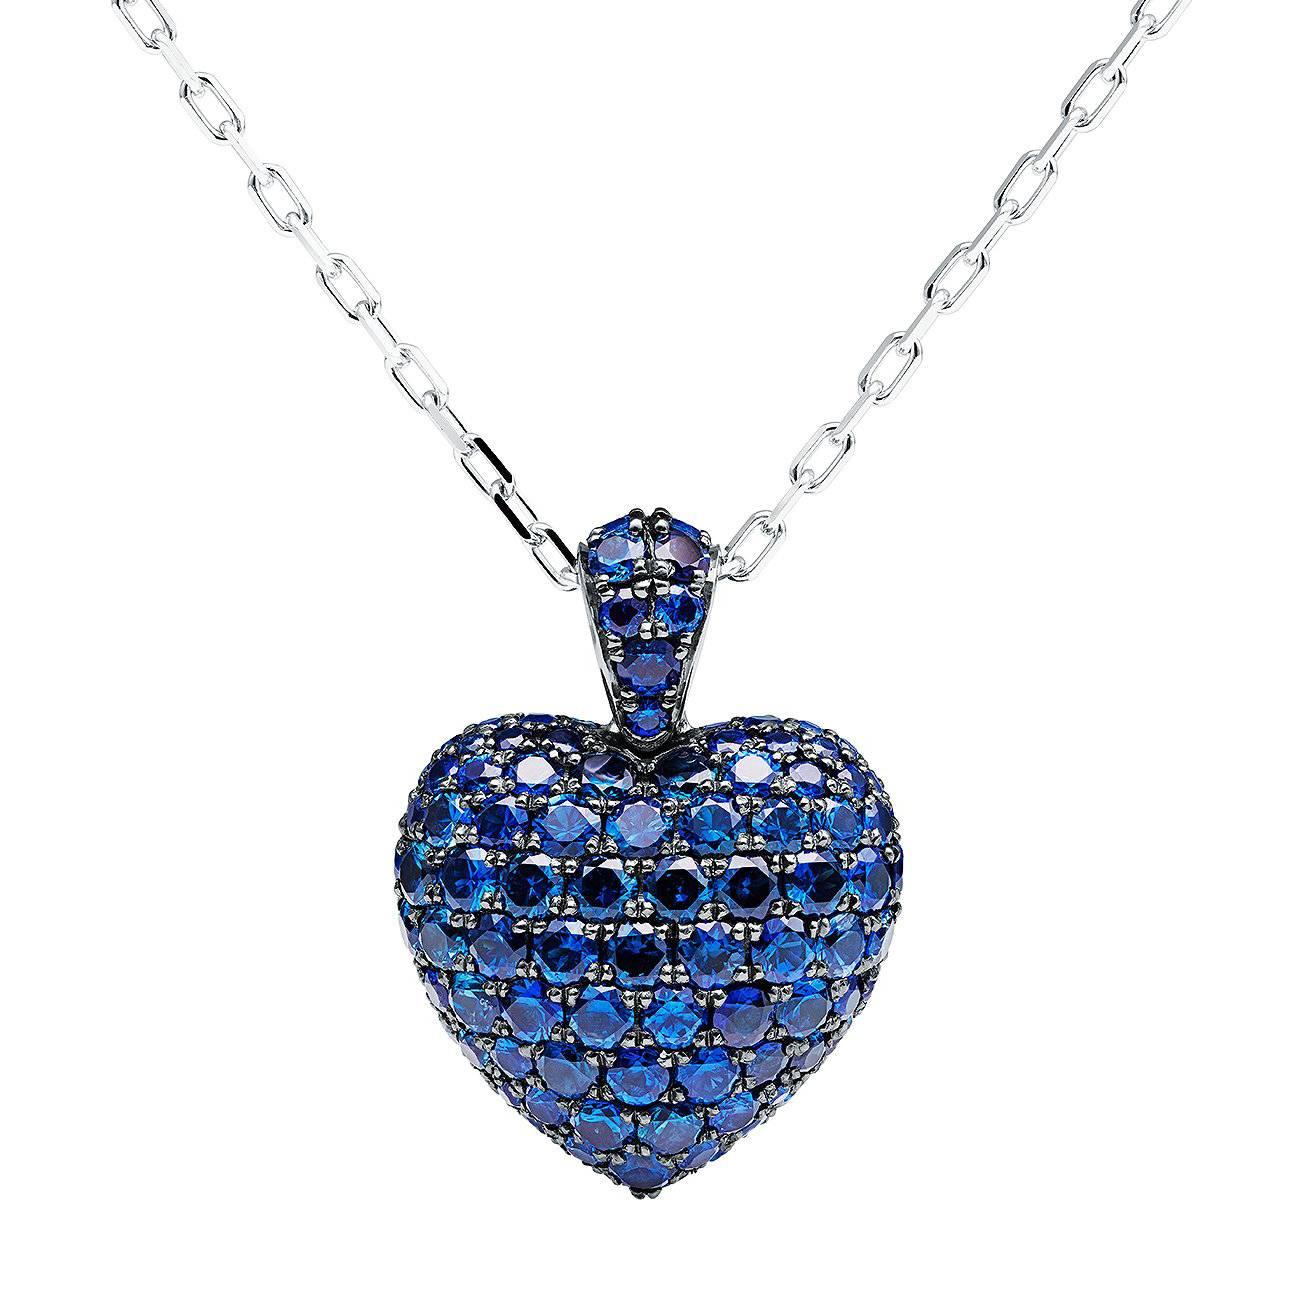 Towe Norlen 3 Carat Cornflower Blue Sapphire Contemporary Heart Pendant Necklace For Sale